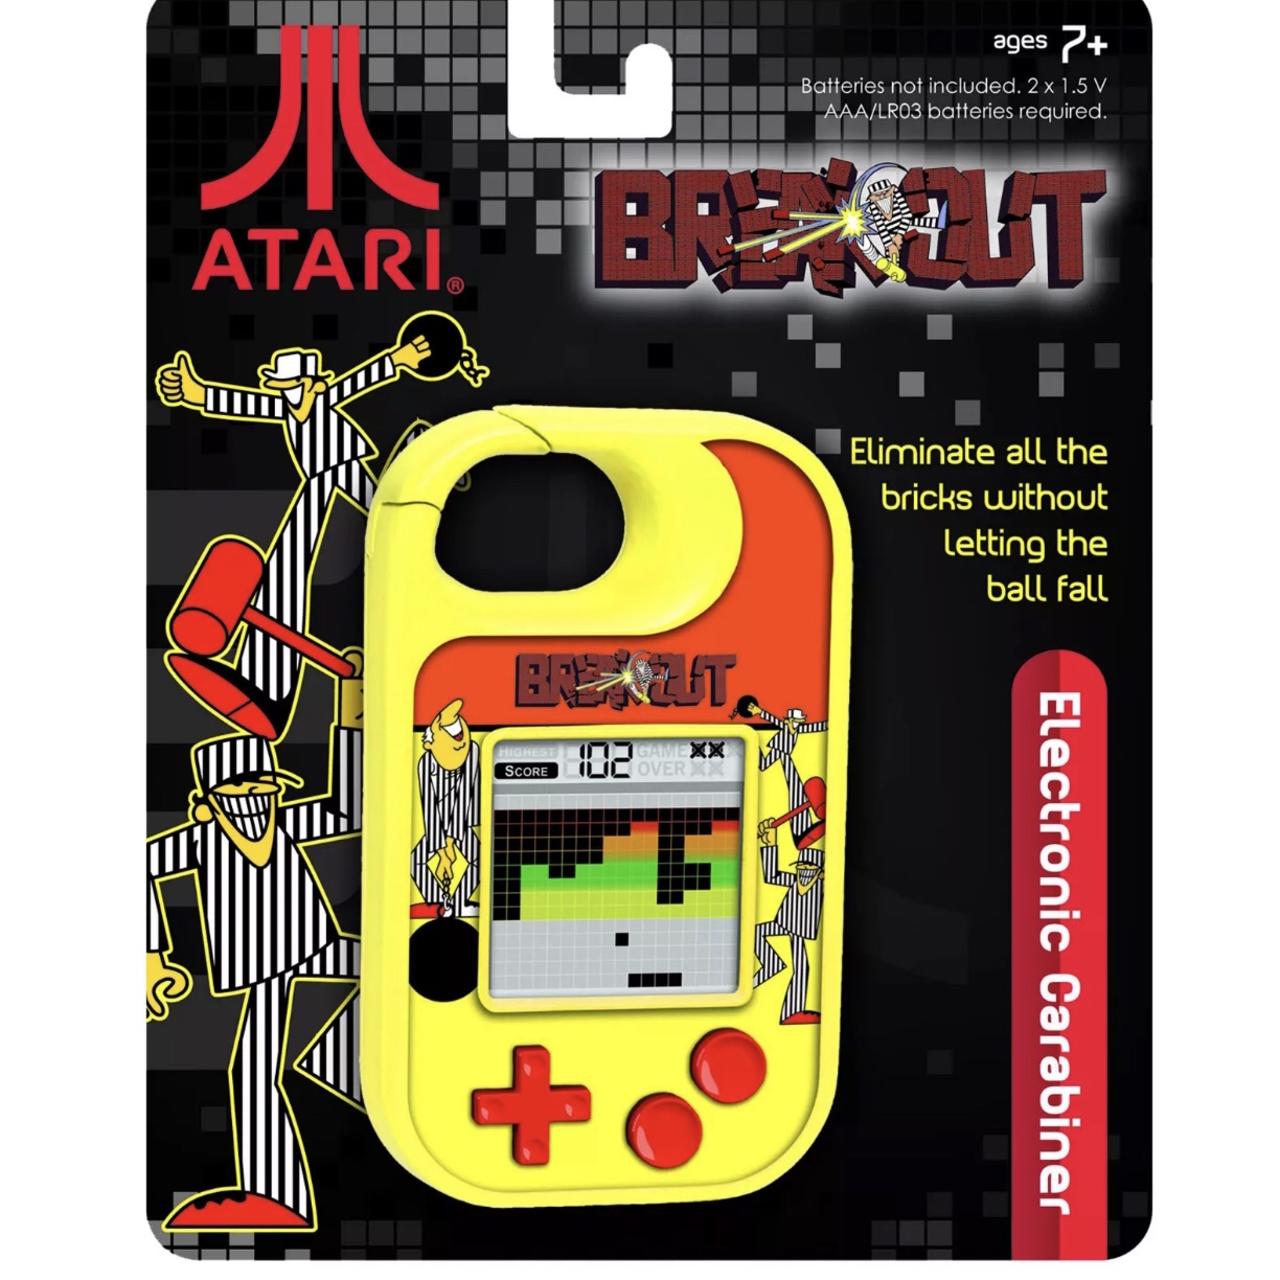 Atari Breakout Handheld Electronic 70s Arcade Game Travel Carabiner Mini New